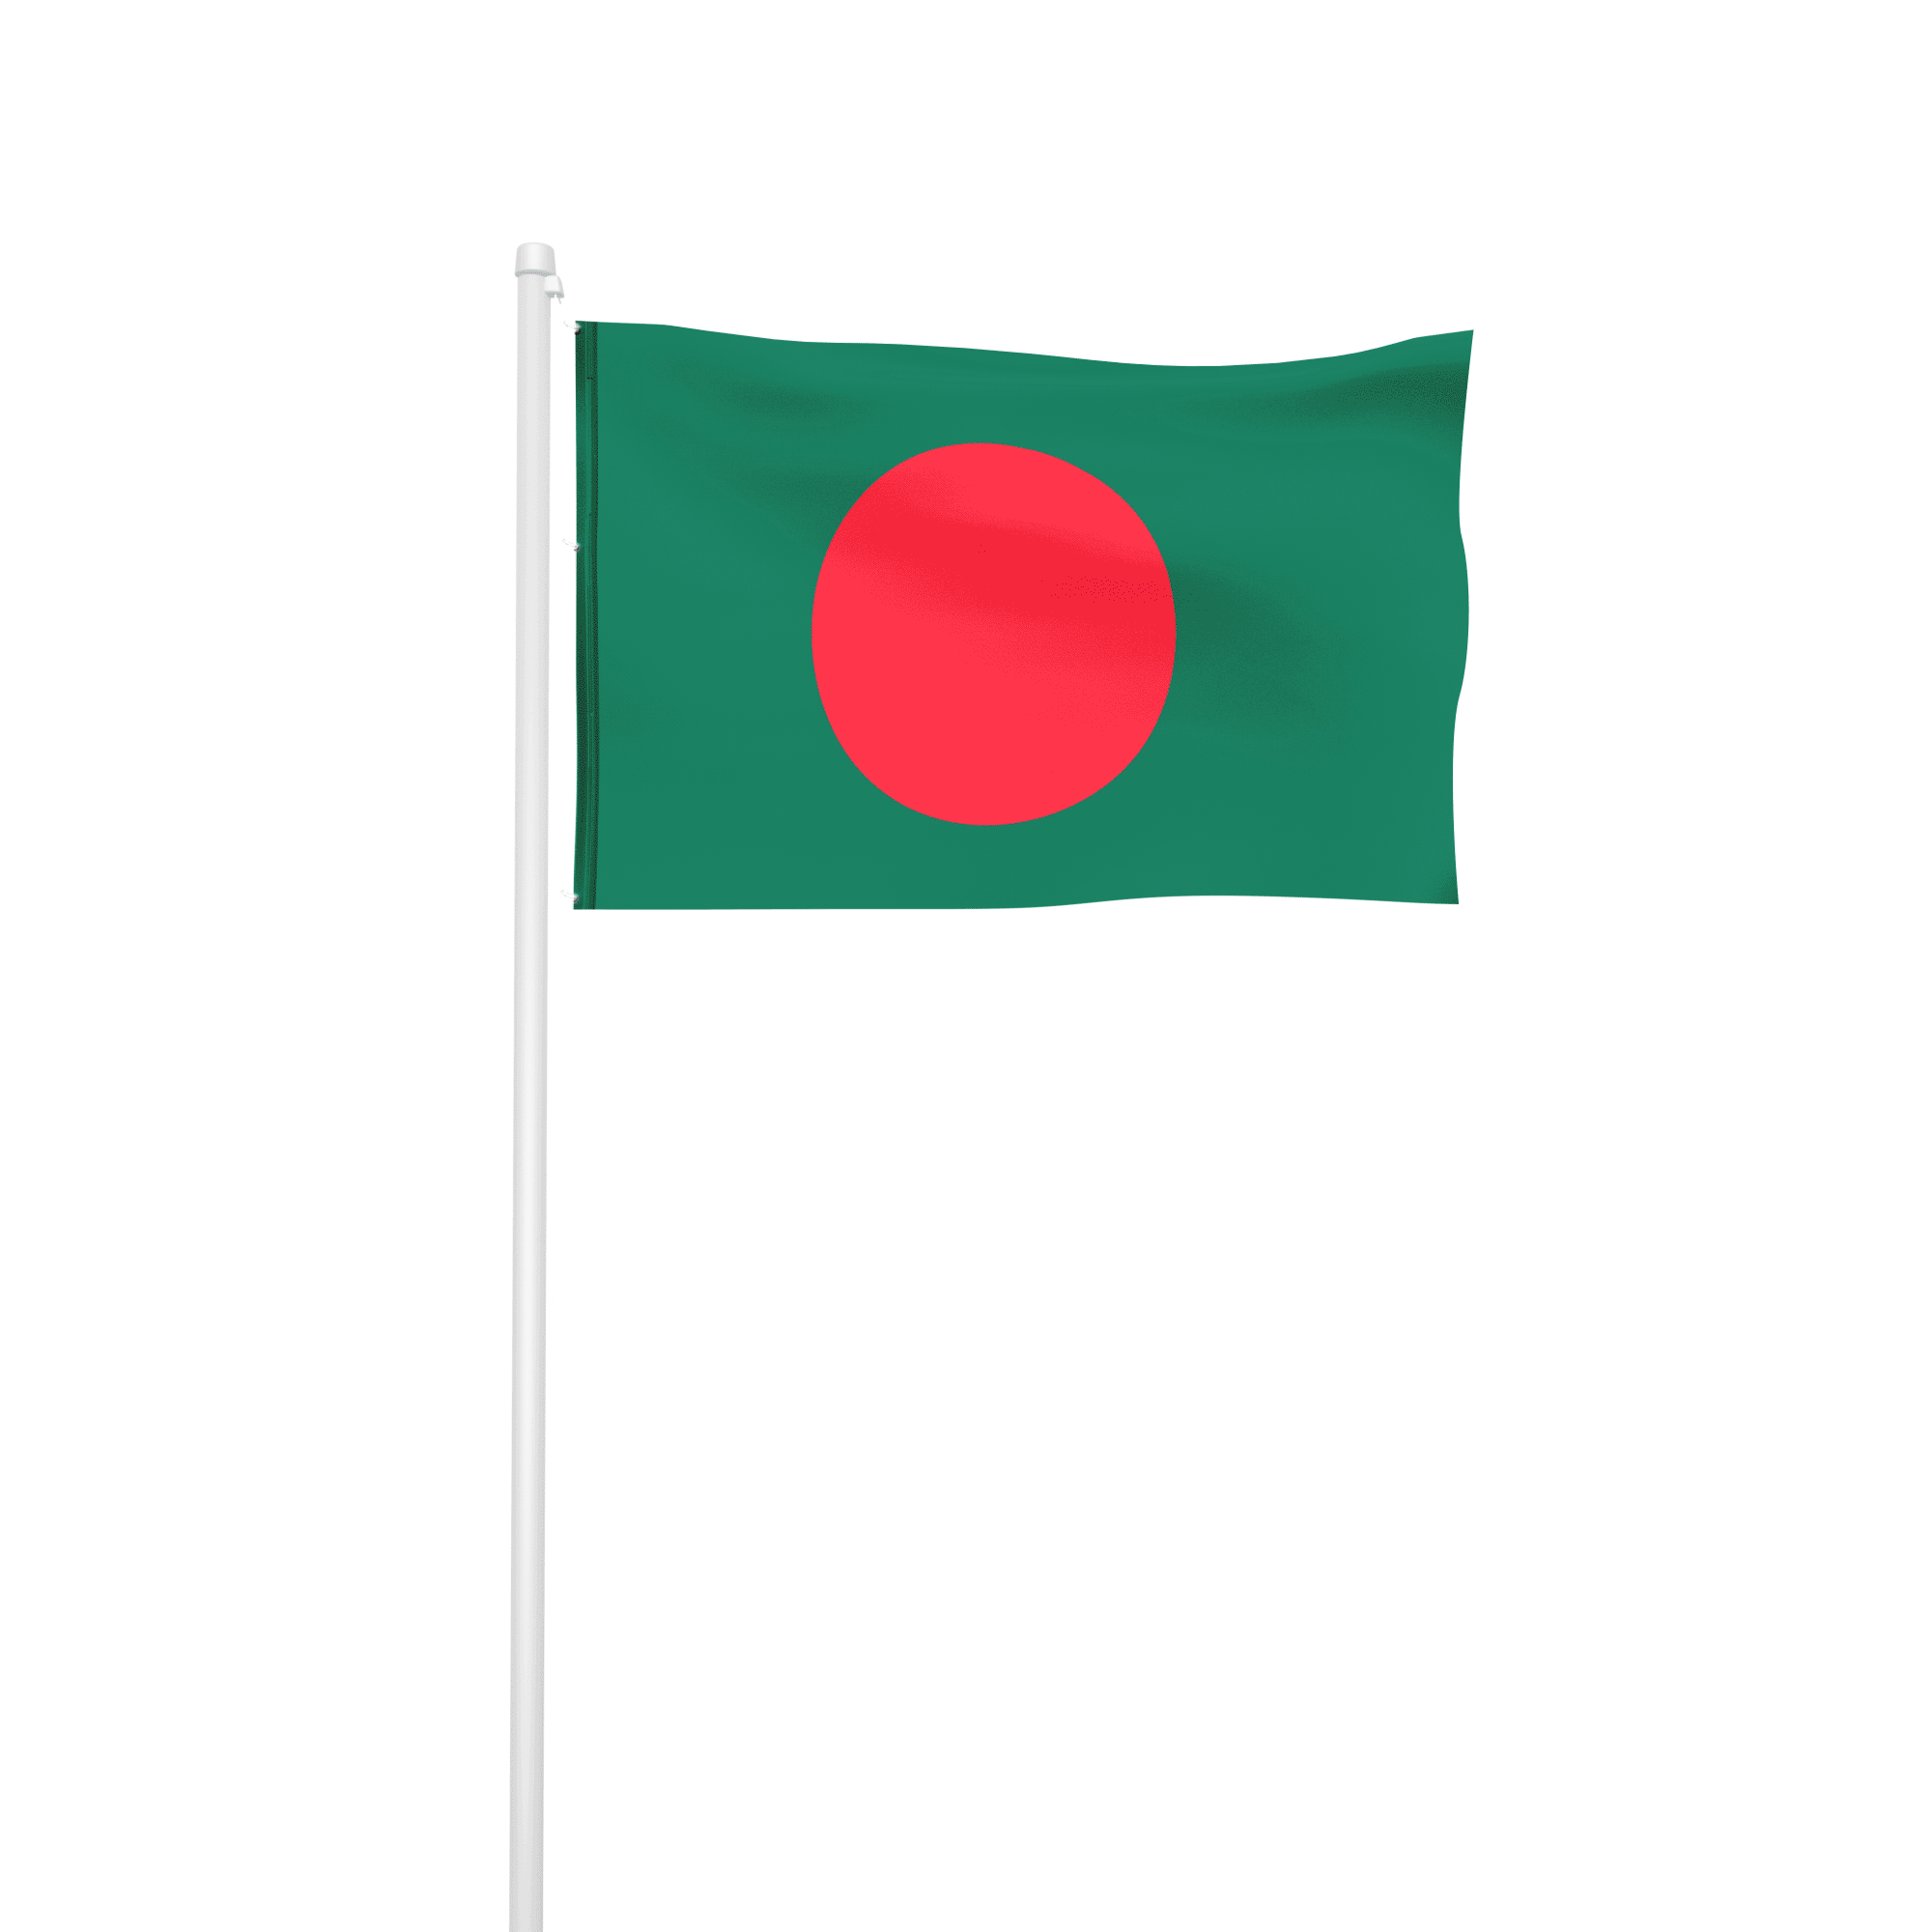 Bangladesch - Hissfahne